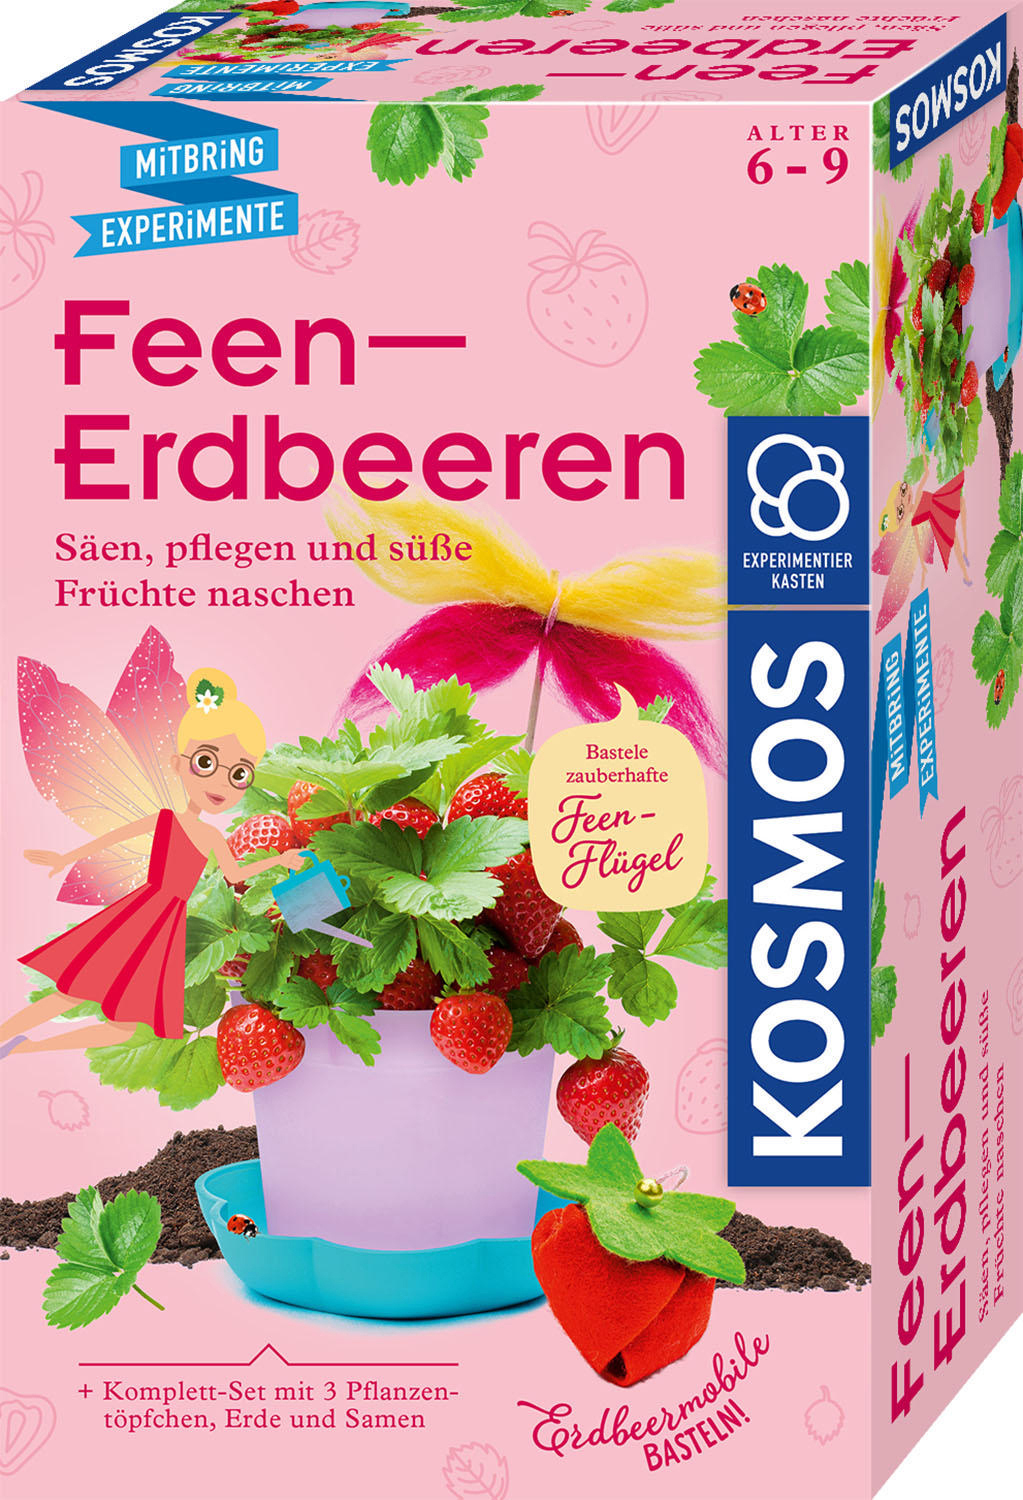 KOSMOS Feen-Erdbeeren Experimentierkasten, Mehrfarbig